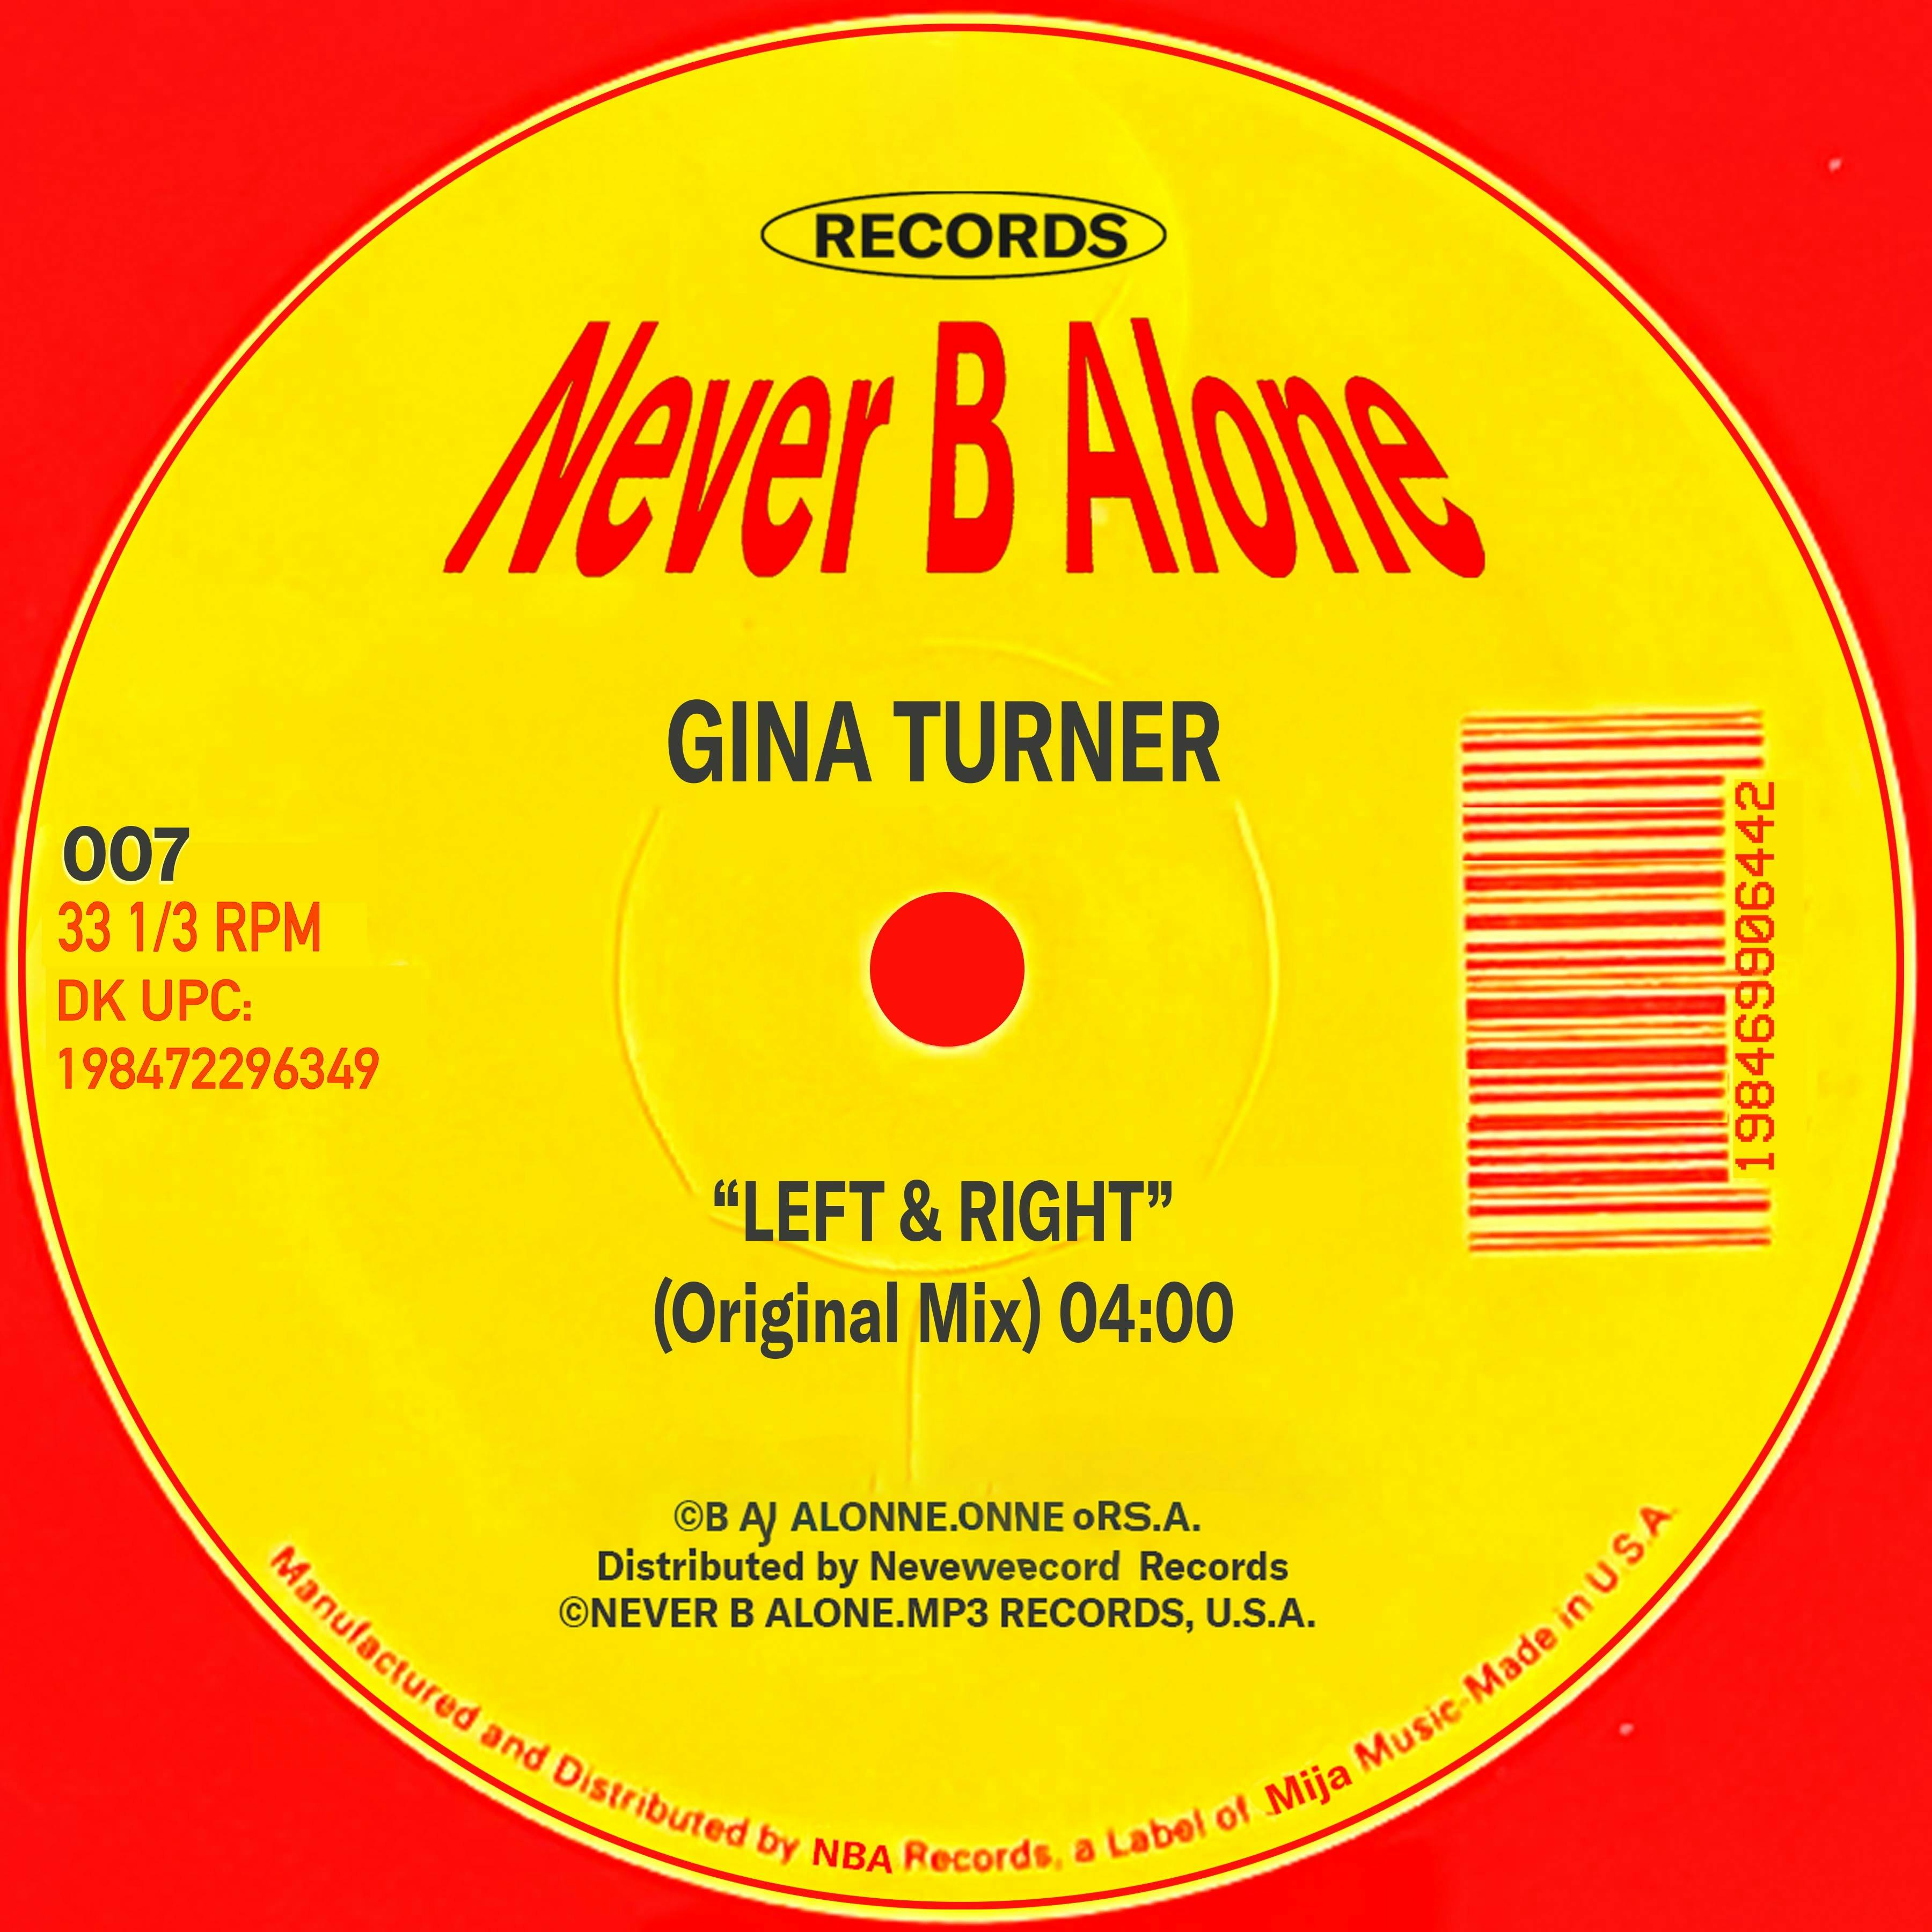 Gina Turner - "Left & Right"